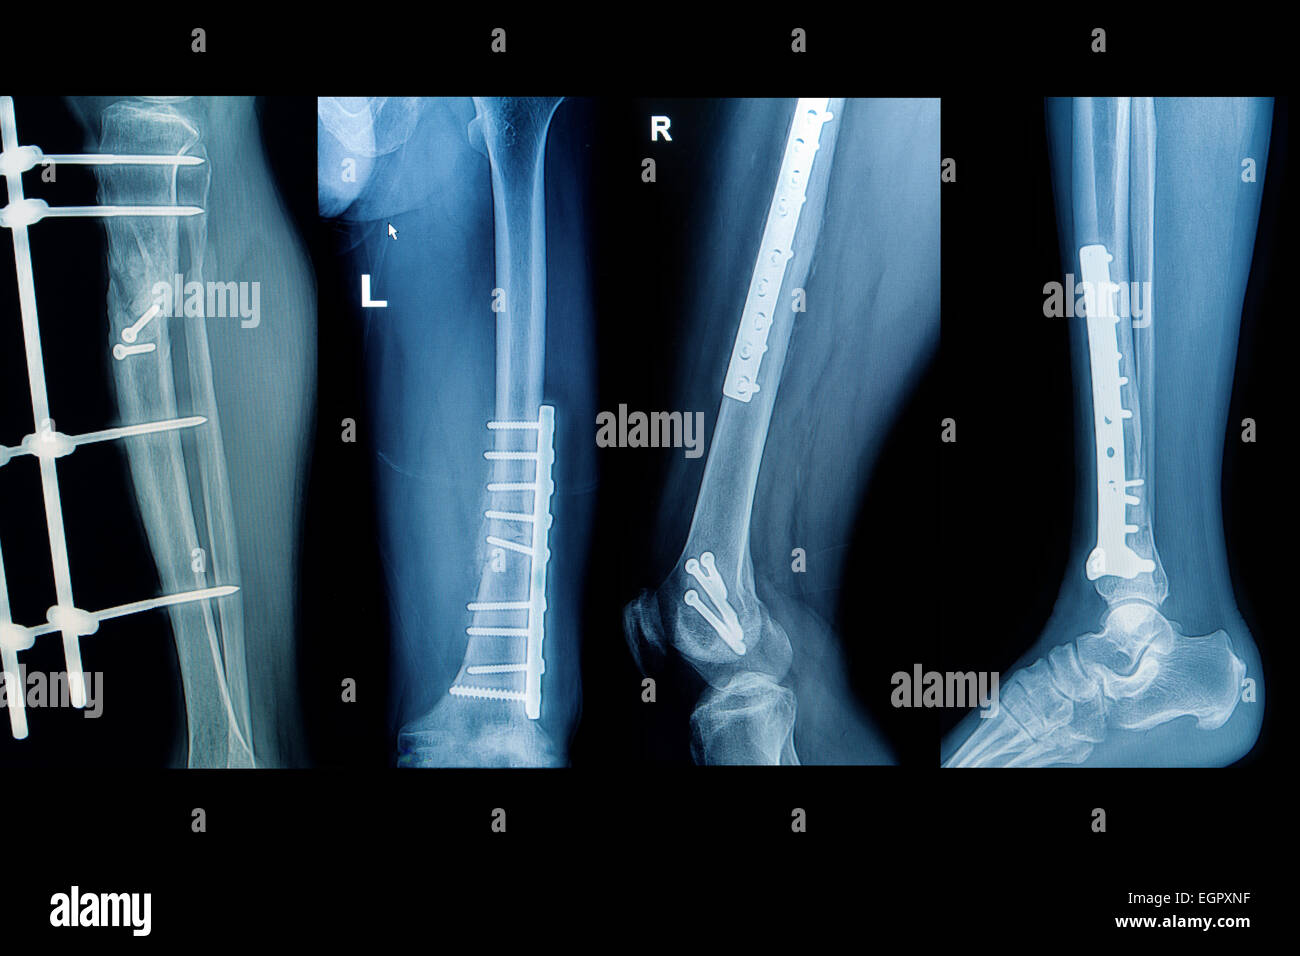 Collezione raggi x immagine dell uomo ,mostrano la frattura estremo inferiore con impianto Foto Stock